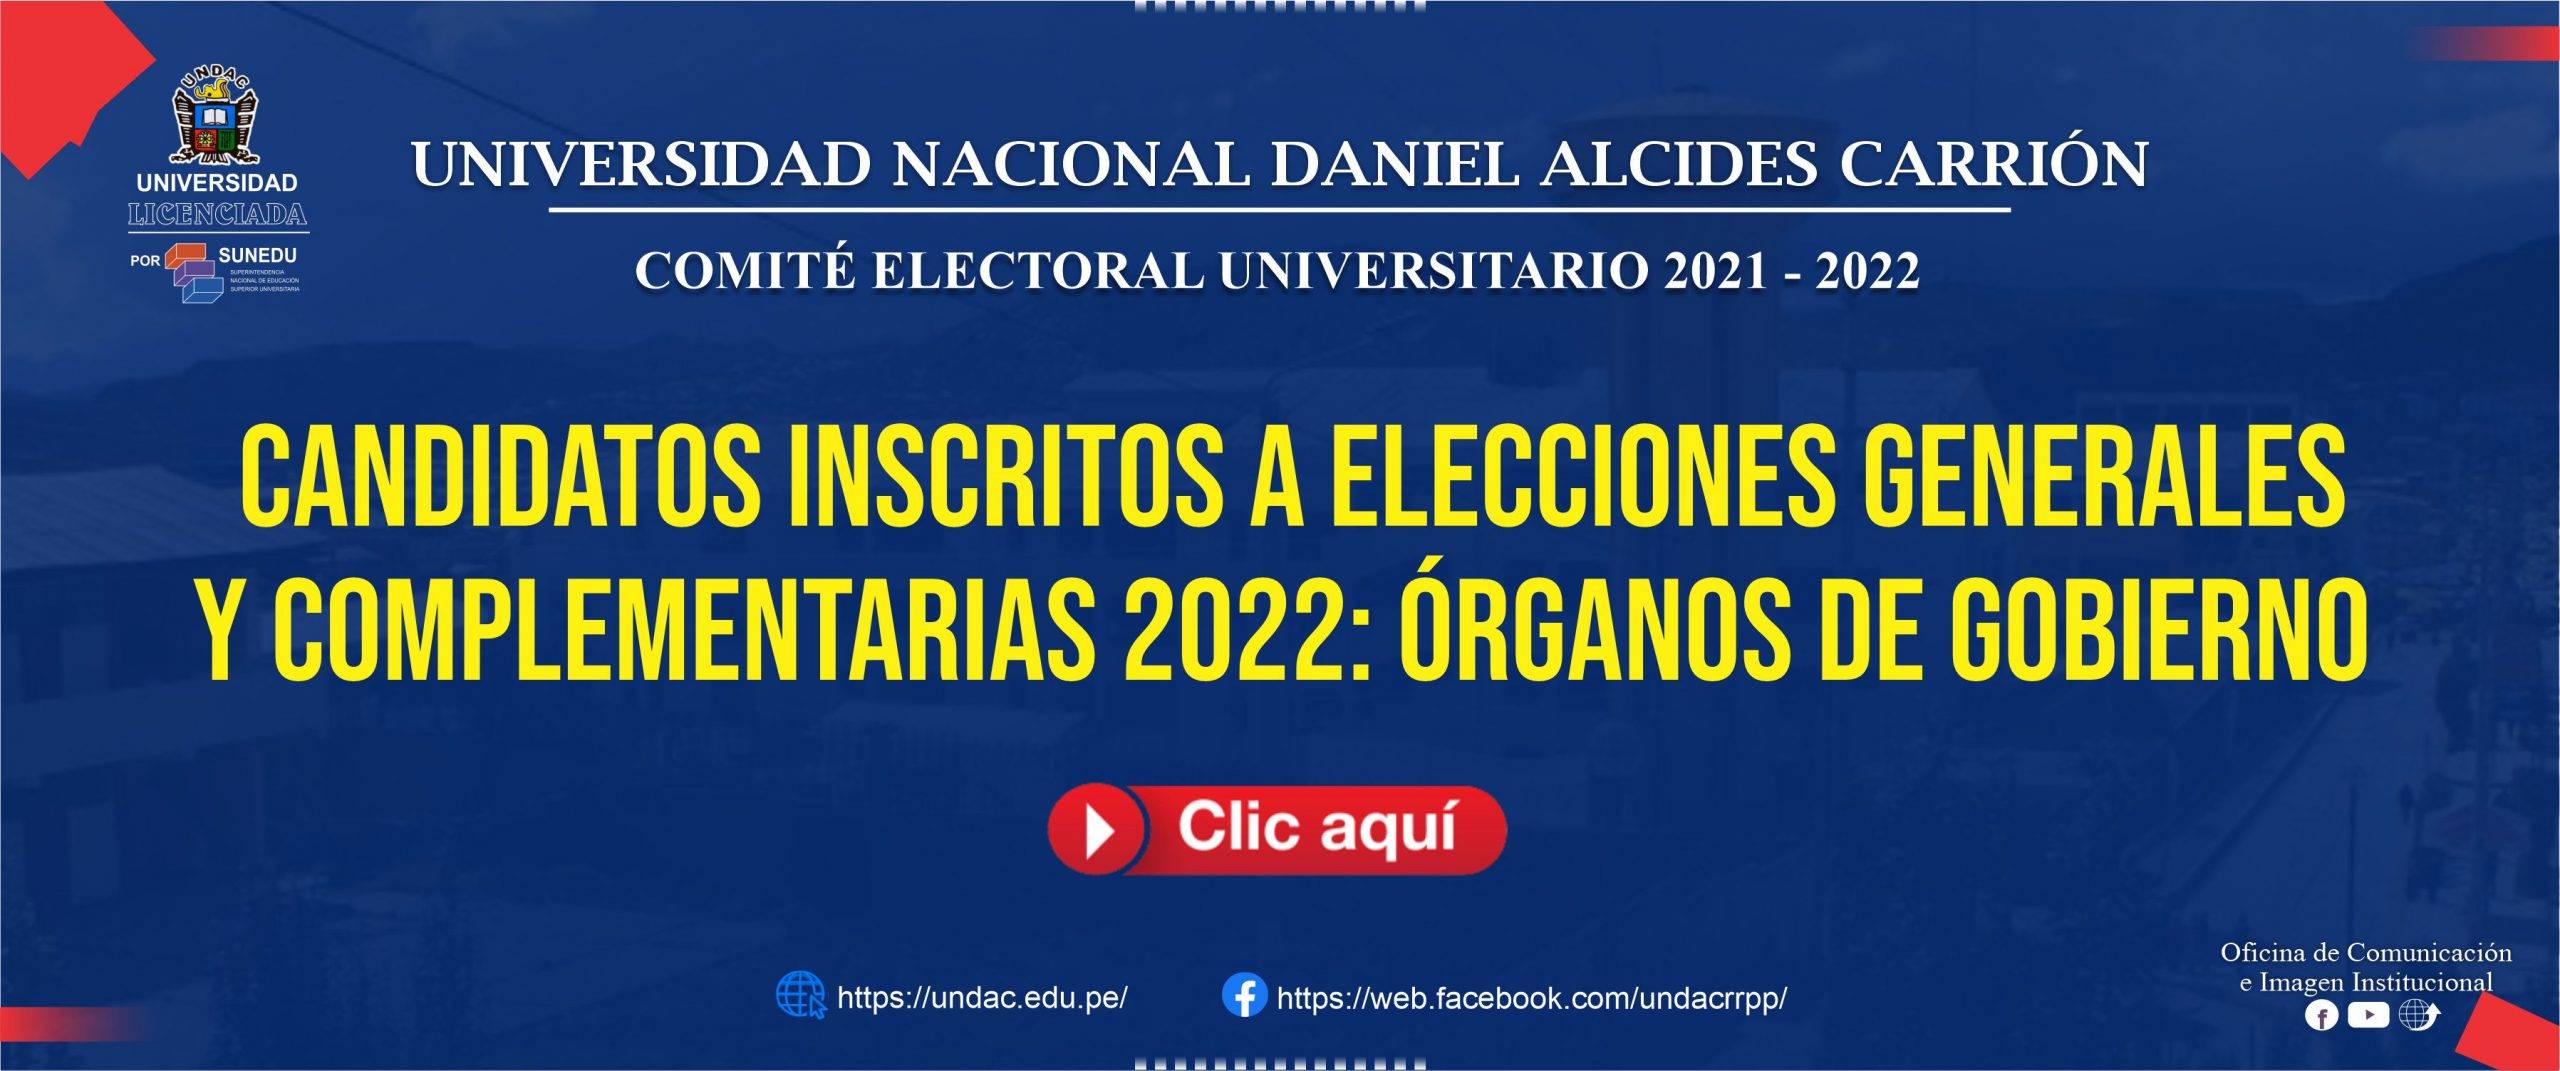 CANDIDATOS INSCRITOS A ELECCIONES GENERALES Y COMPLEMENTARIAS 2022: ÓRGANOS DE GOBIERNO